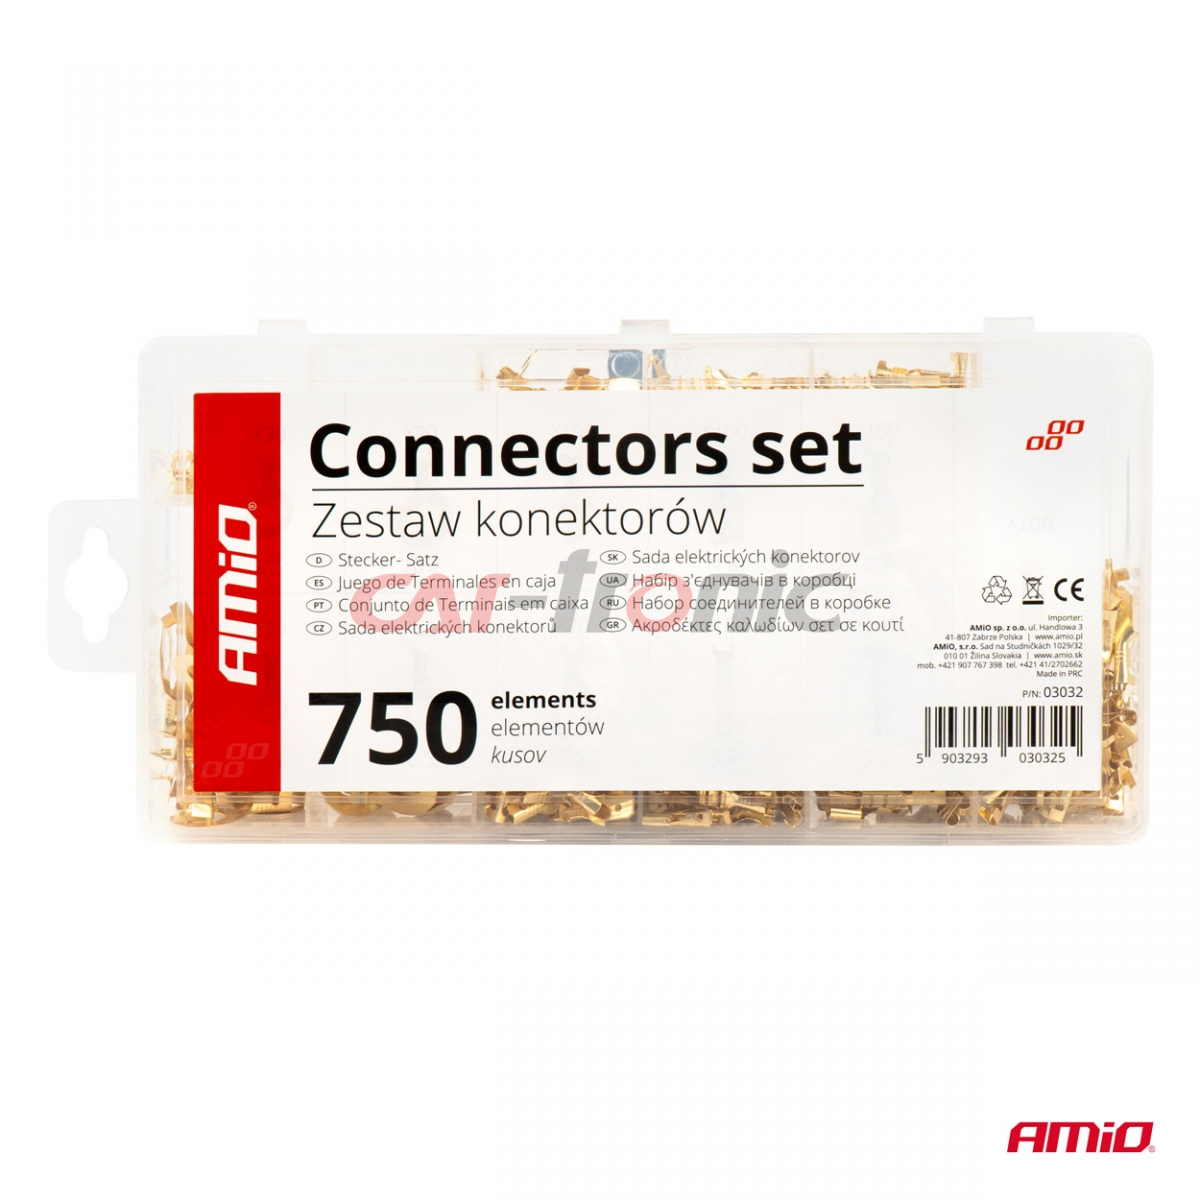 Konektory zestaw konektorów samochodowych 750 szt. AMIO-03032